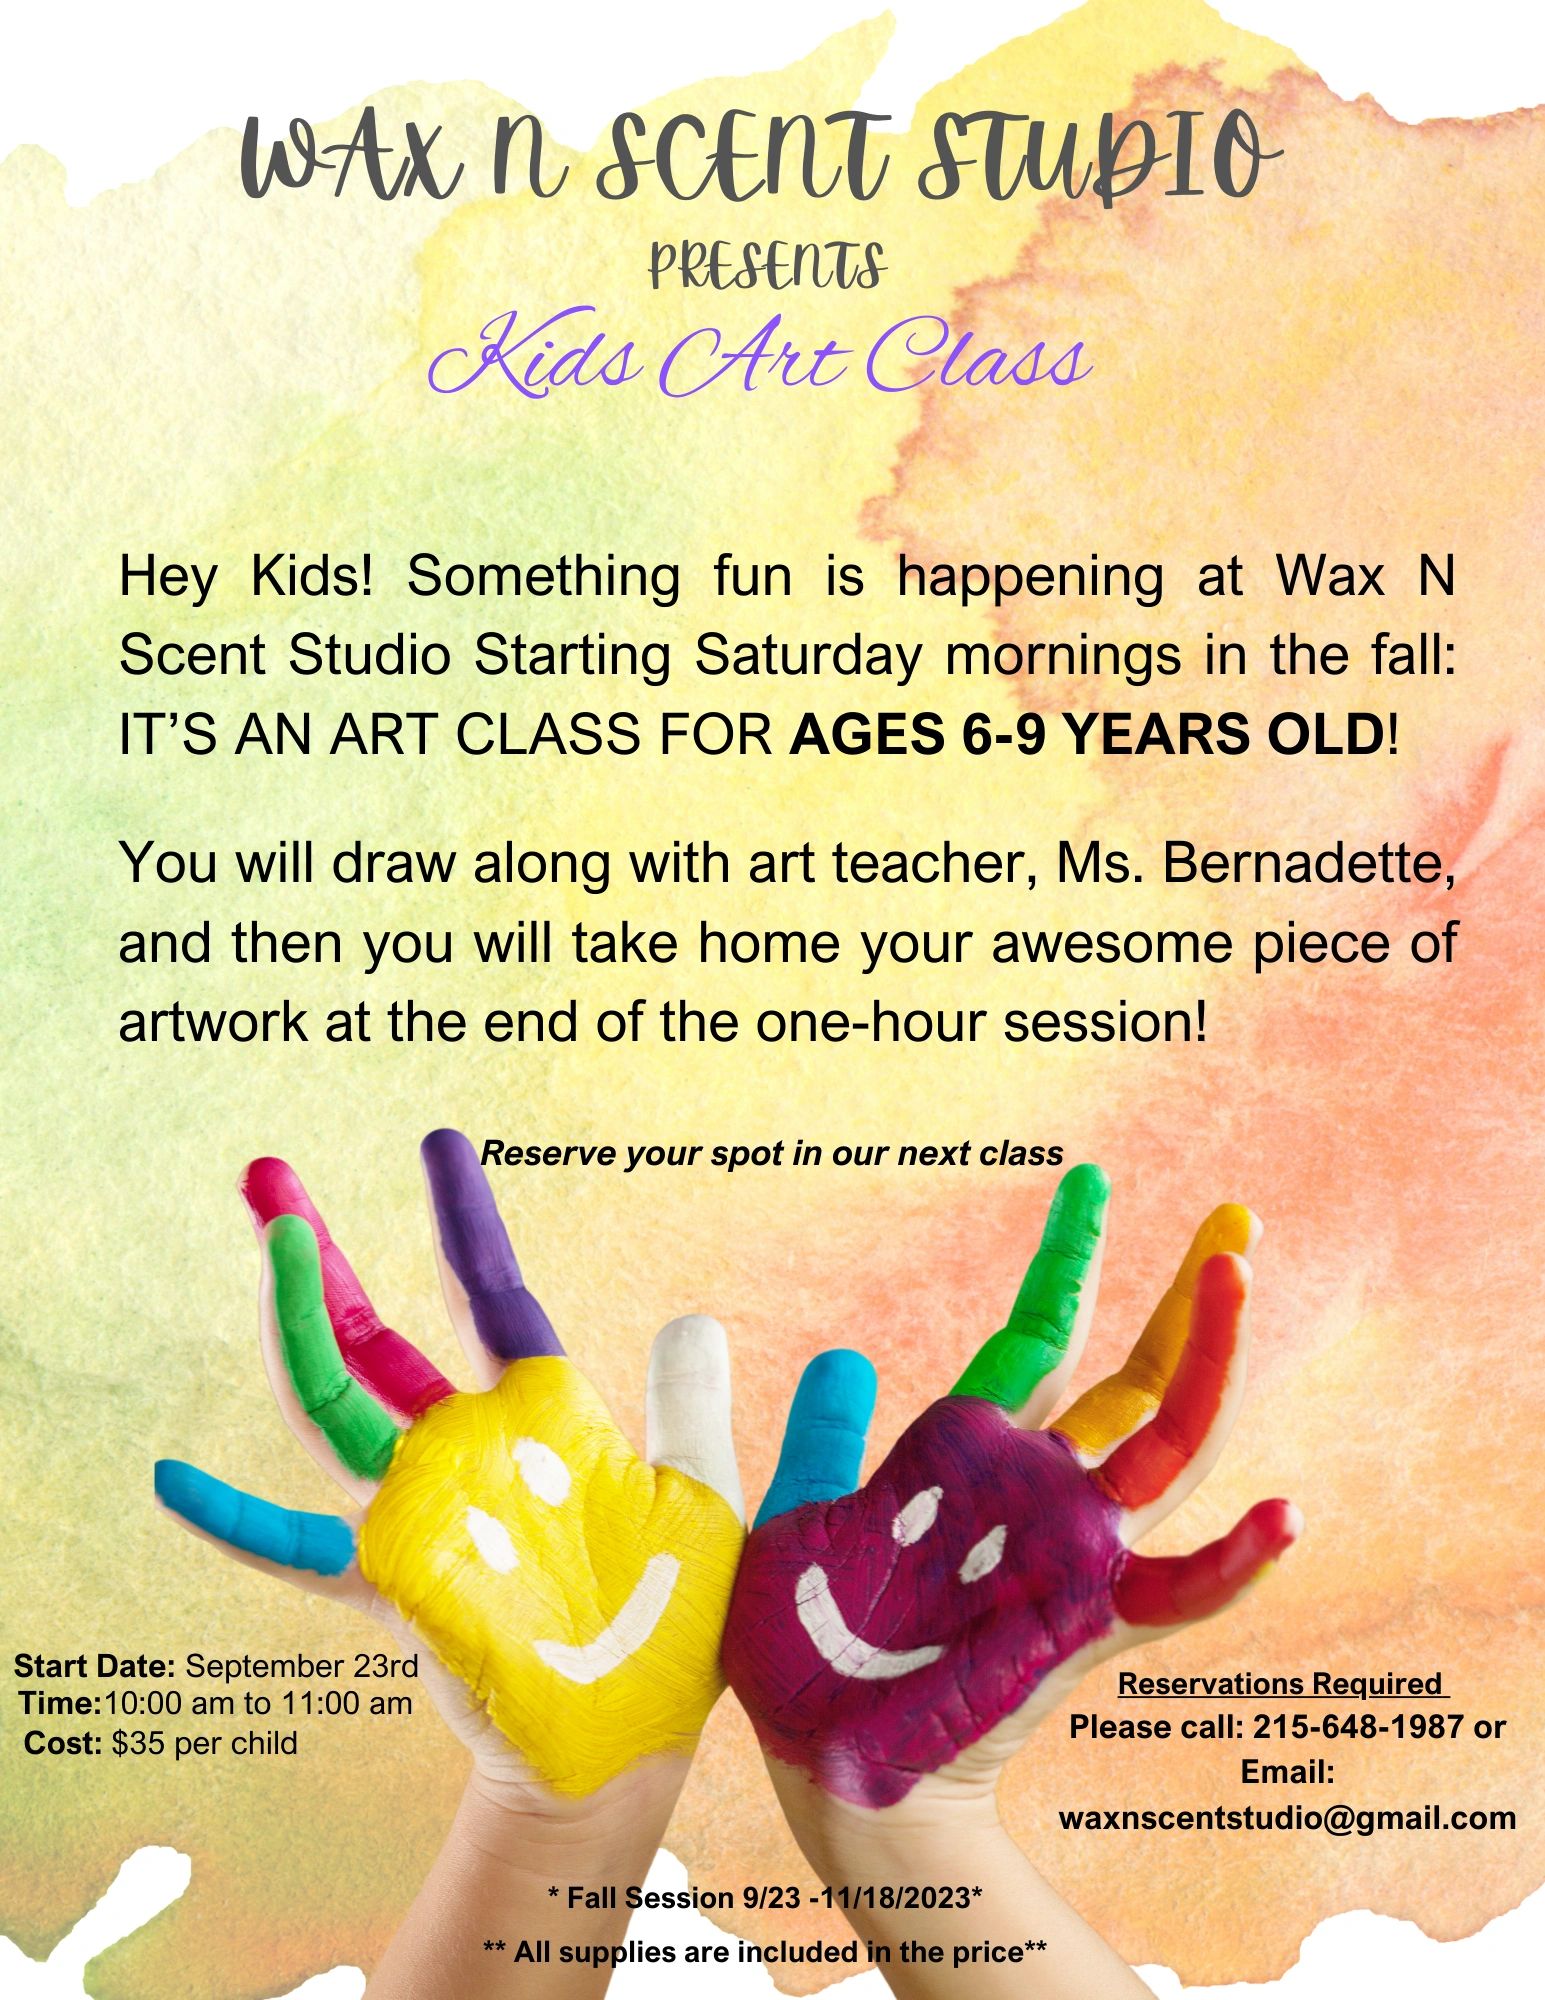 Wax N Scent Presents: Kids' Art Class